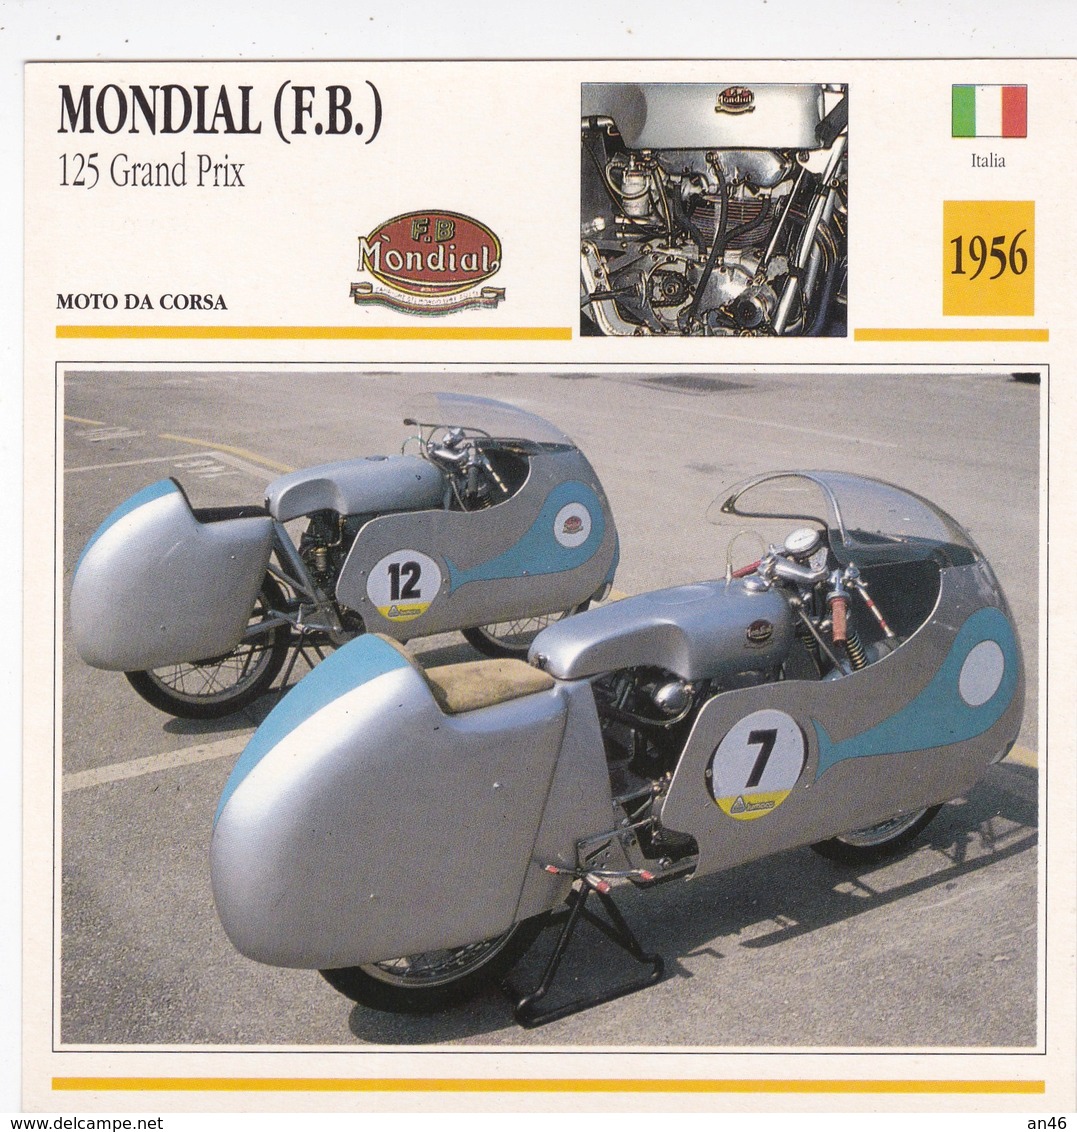 MOTO DA CORSA MONDIAL (F.B.) 125 GRAND PRIX ITALIA 1956 DESCRIZIONE COMPLETA SUL RETRO AUTENTICA 100% - Advertising